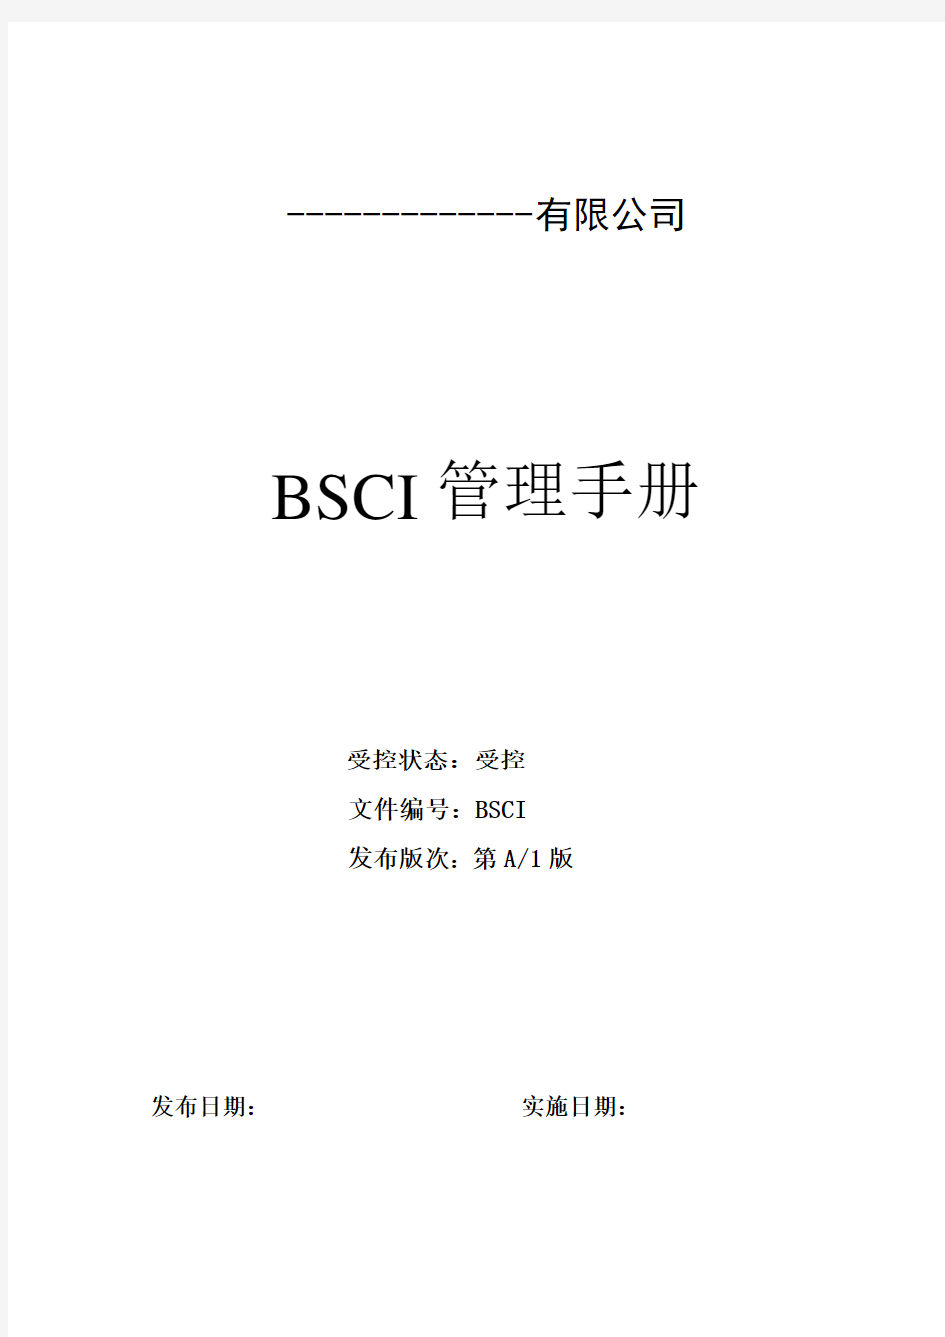 新BSCI管理手册